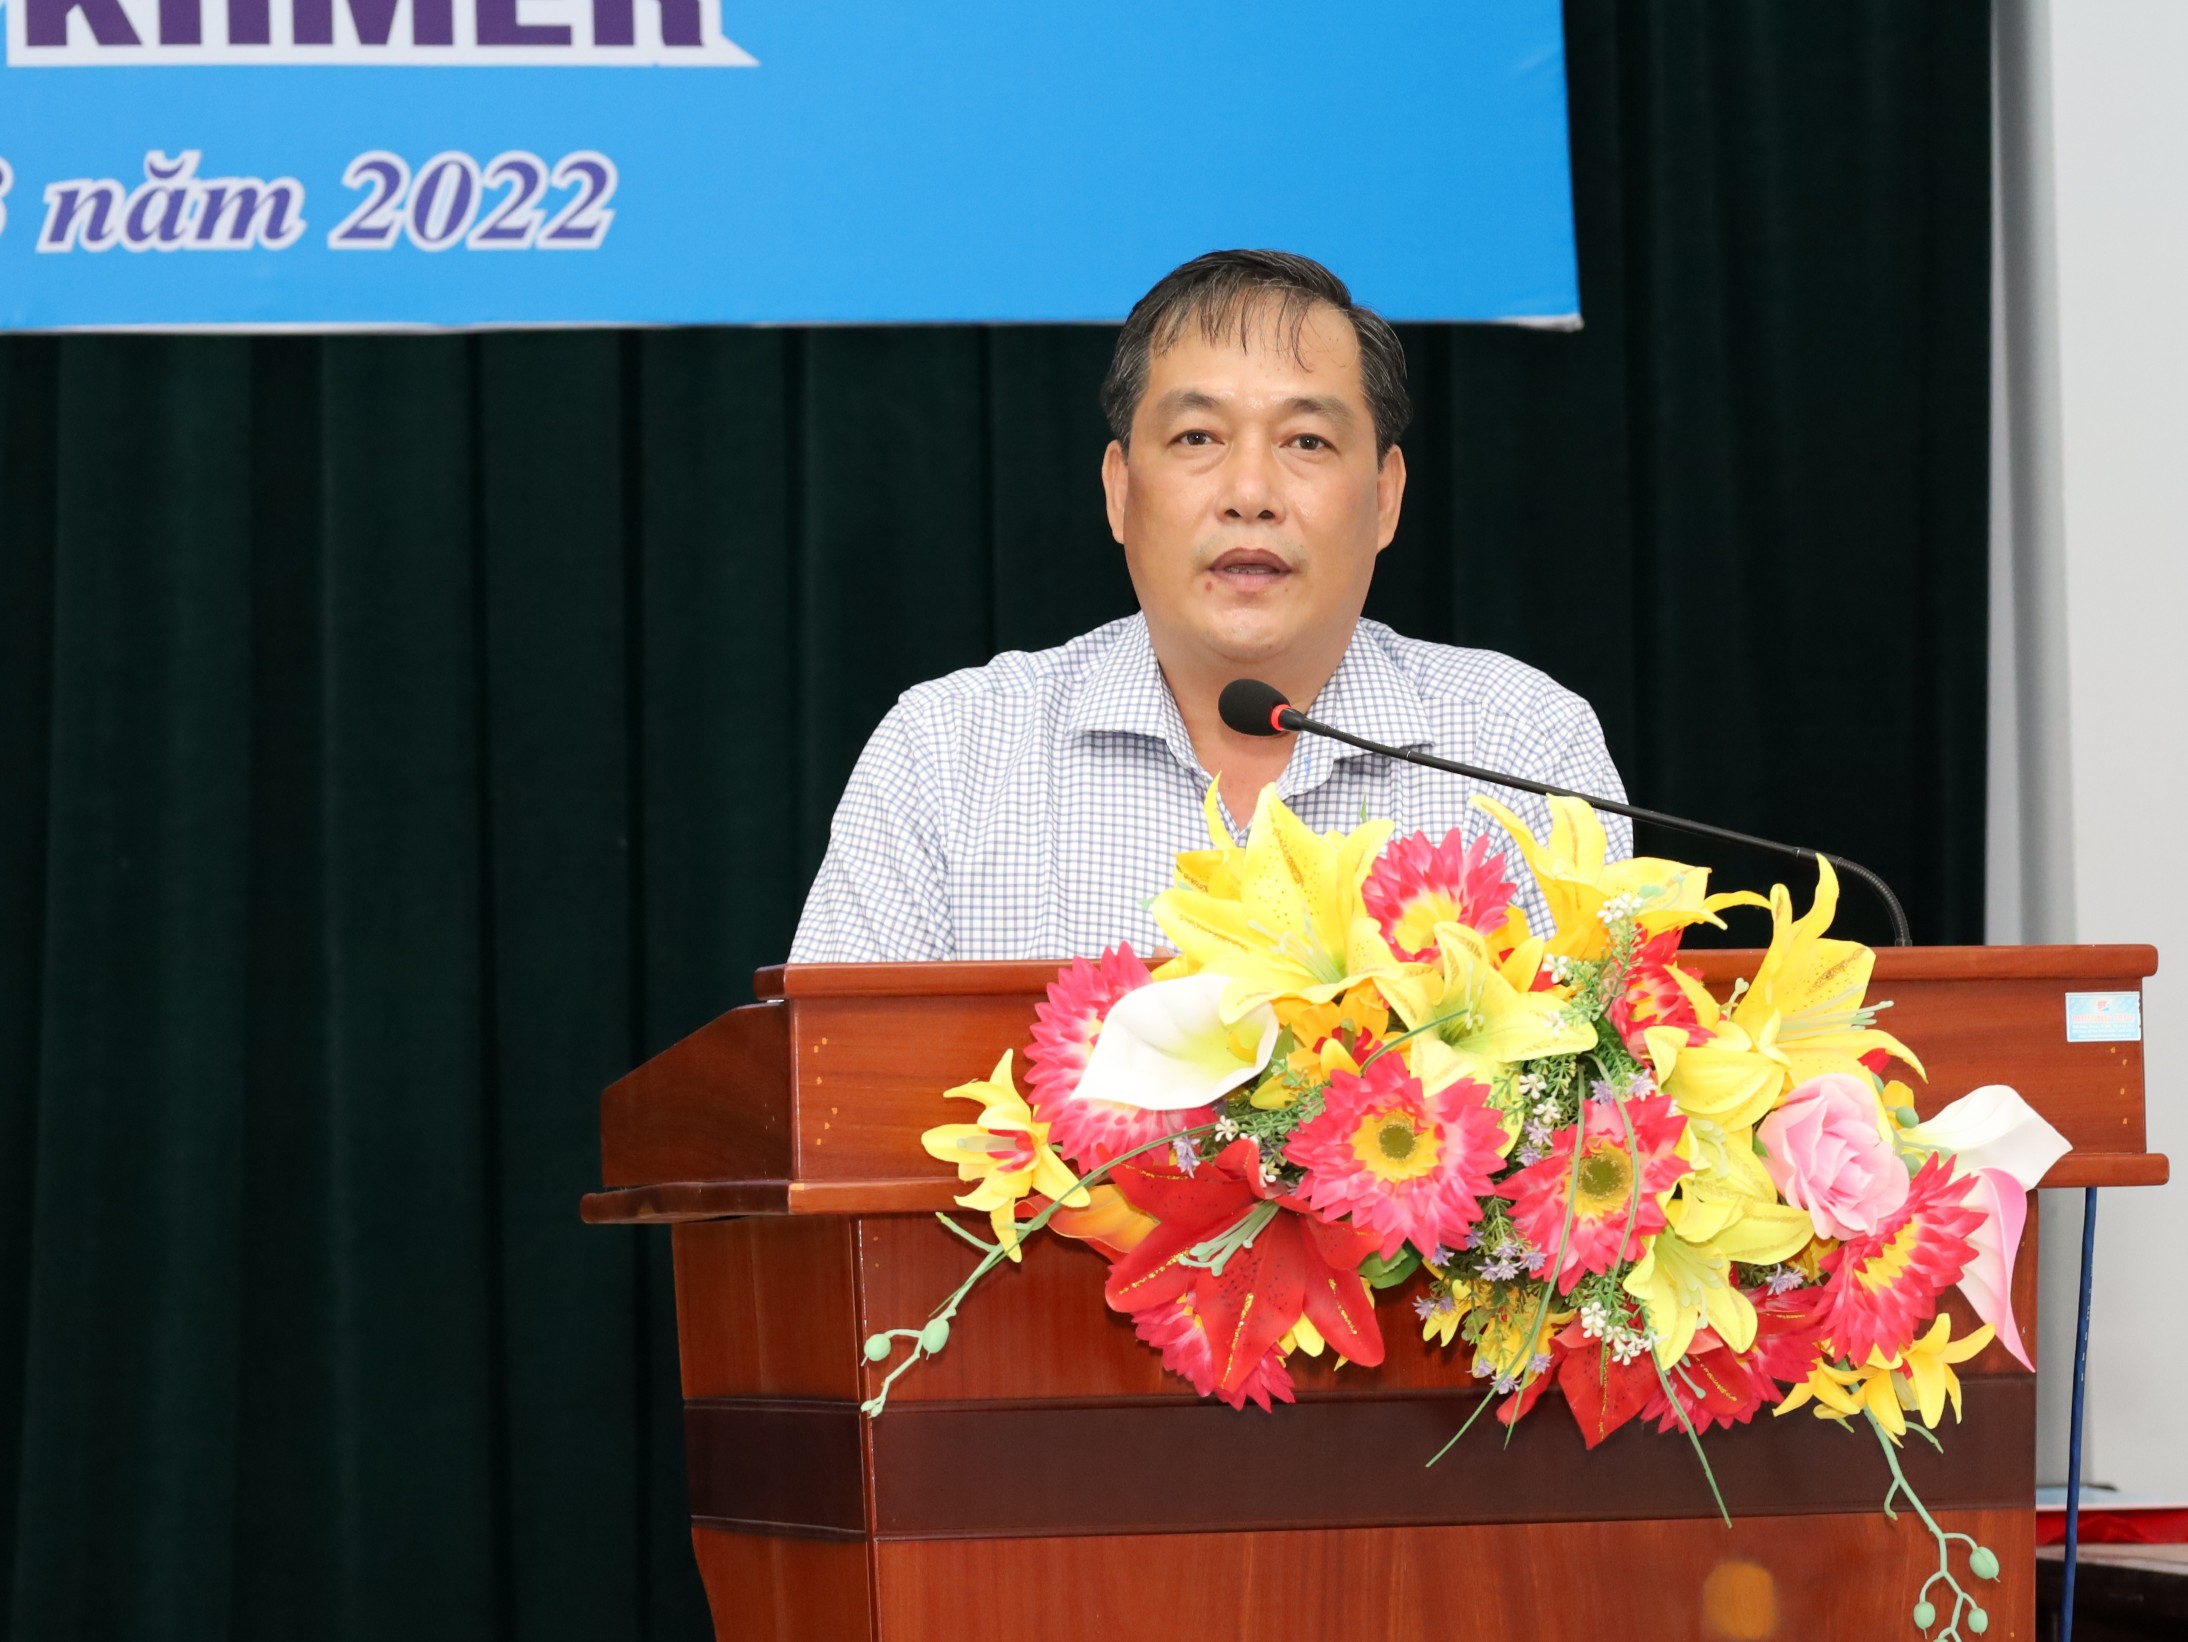 Ông Nguyễn Ngọc Thanh - Phó Bí thư thường trực, Chủ tịch HĐND huyện Cờ Đỏ phát biểu tại chương trình.